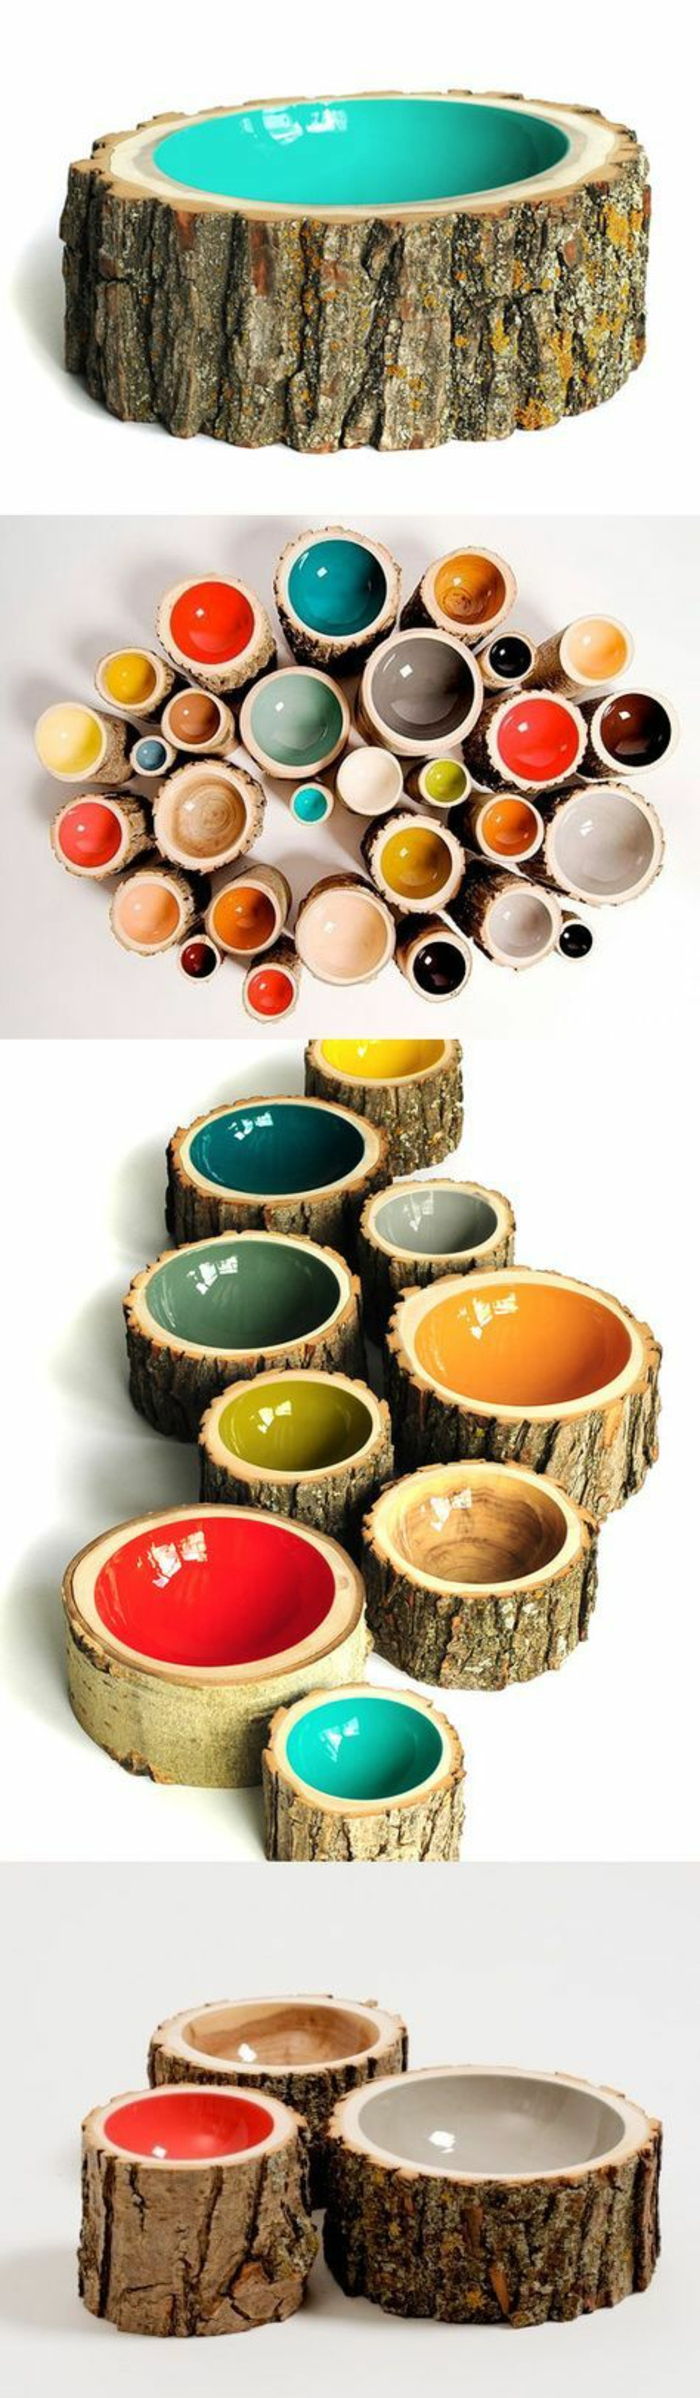 14 de parede fatias de prateleira de madeira de madeira colorida-color-creative-ideia-round-prateleiras